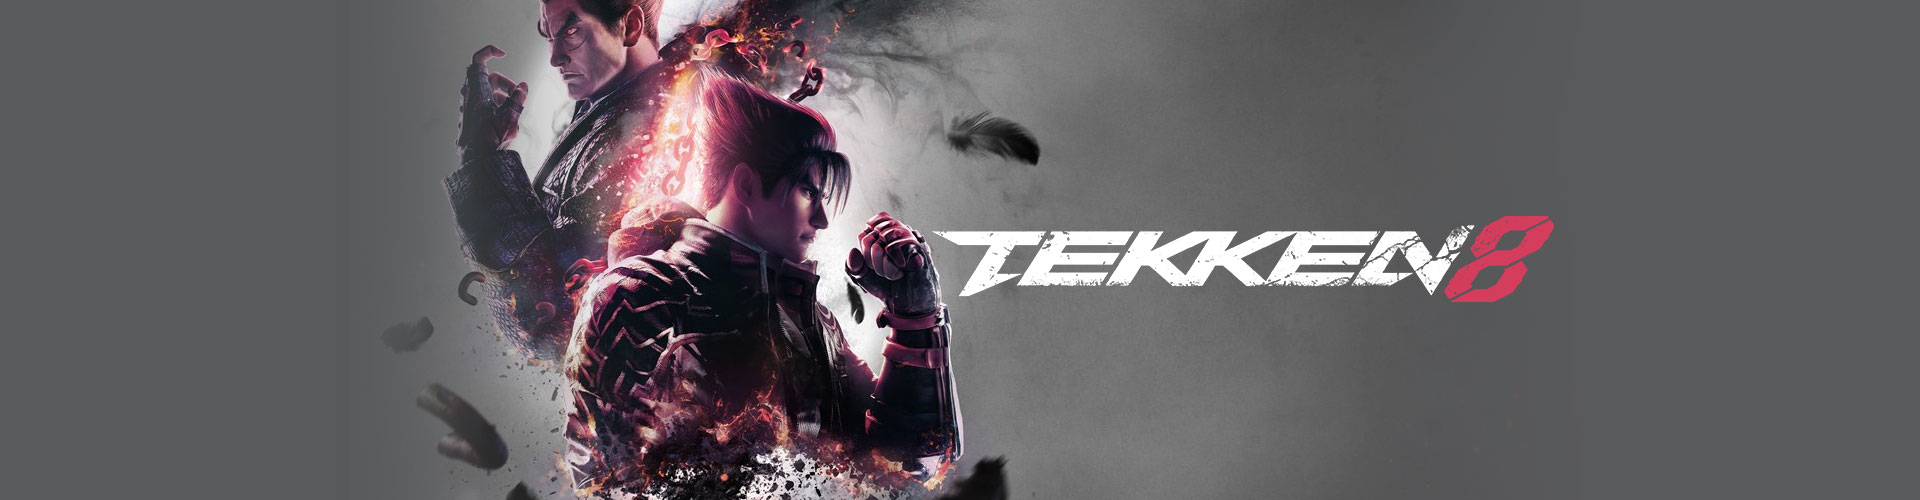 Configuration PC pour jouer à Tekken 8